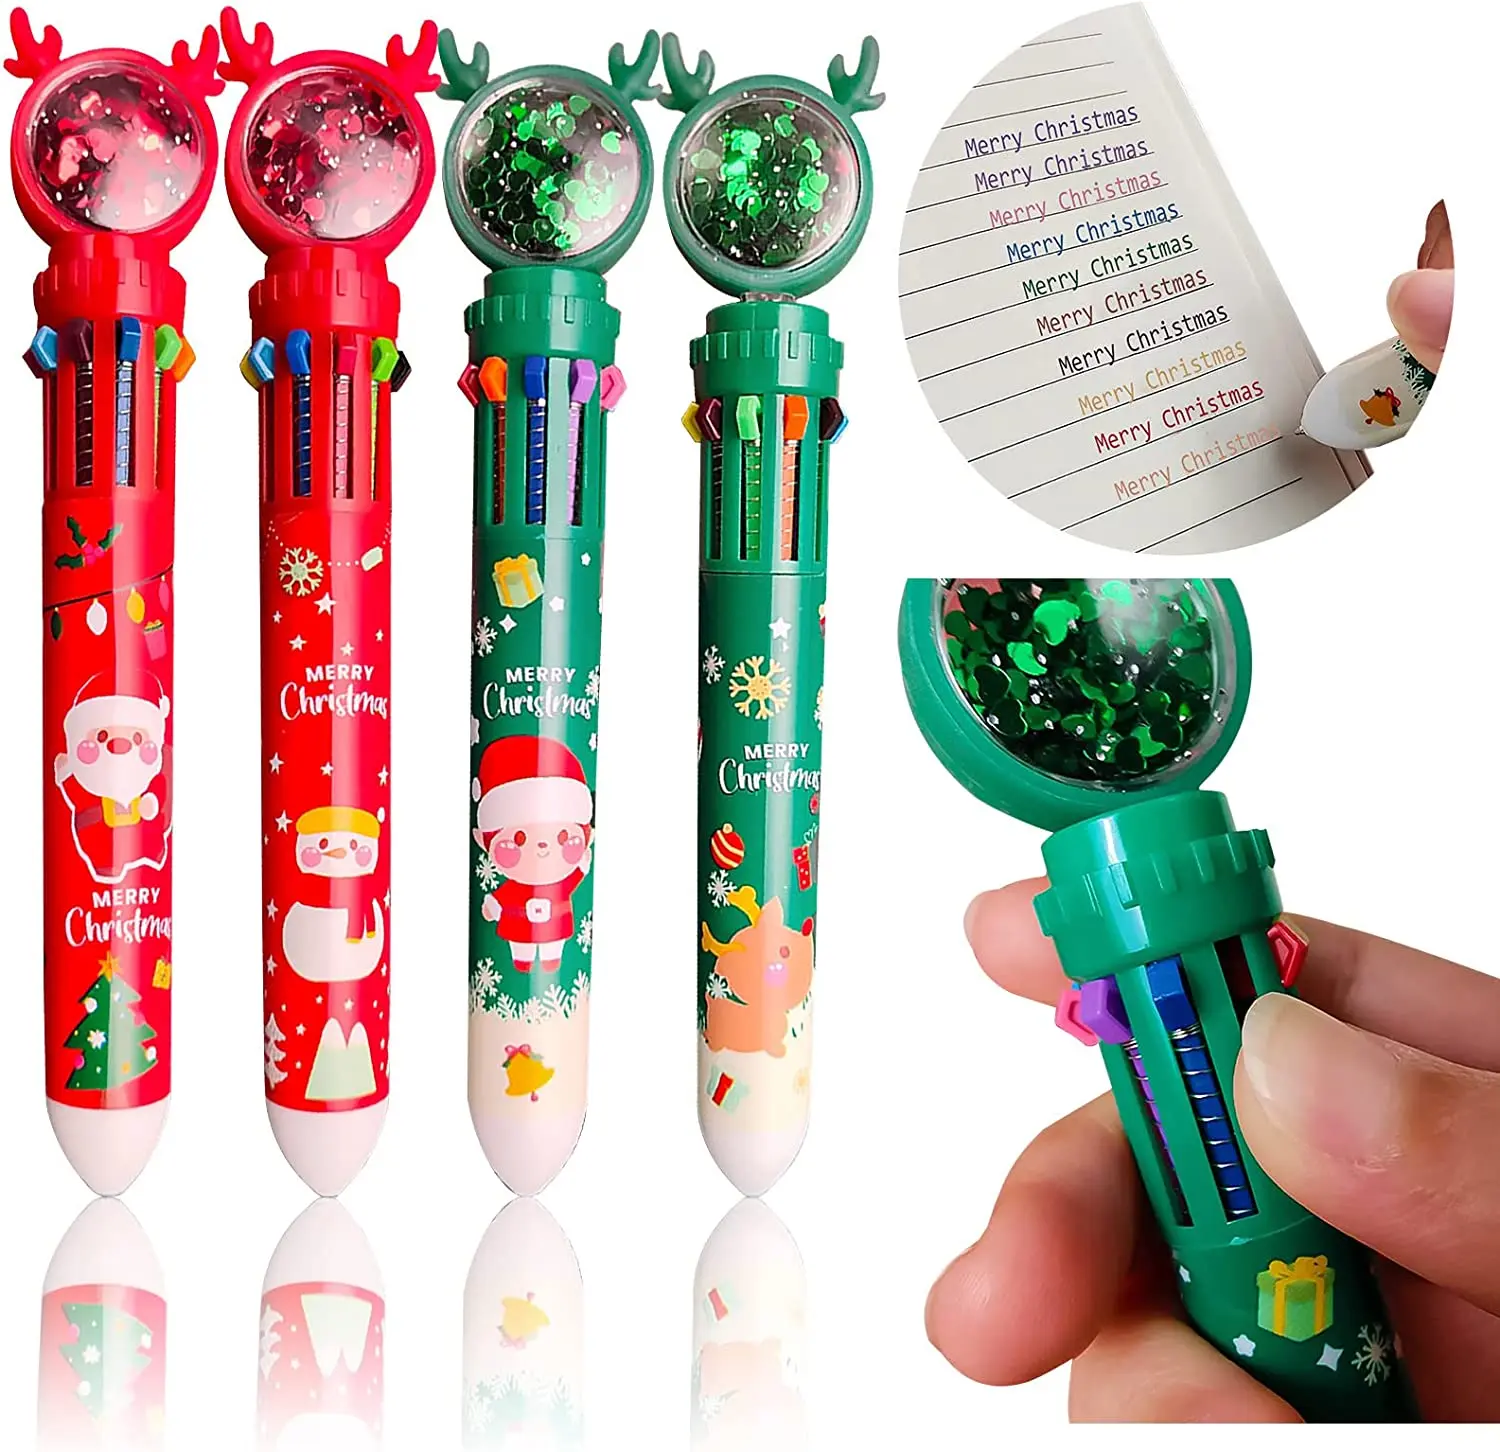 

4 упаковки рождественских шариковых ручек 0,5 мм, разноцветные шариковые карандаши 10 в 1